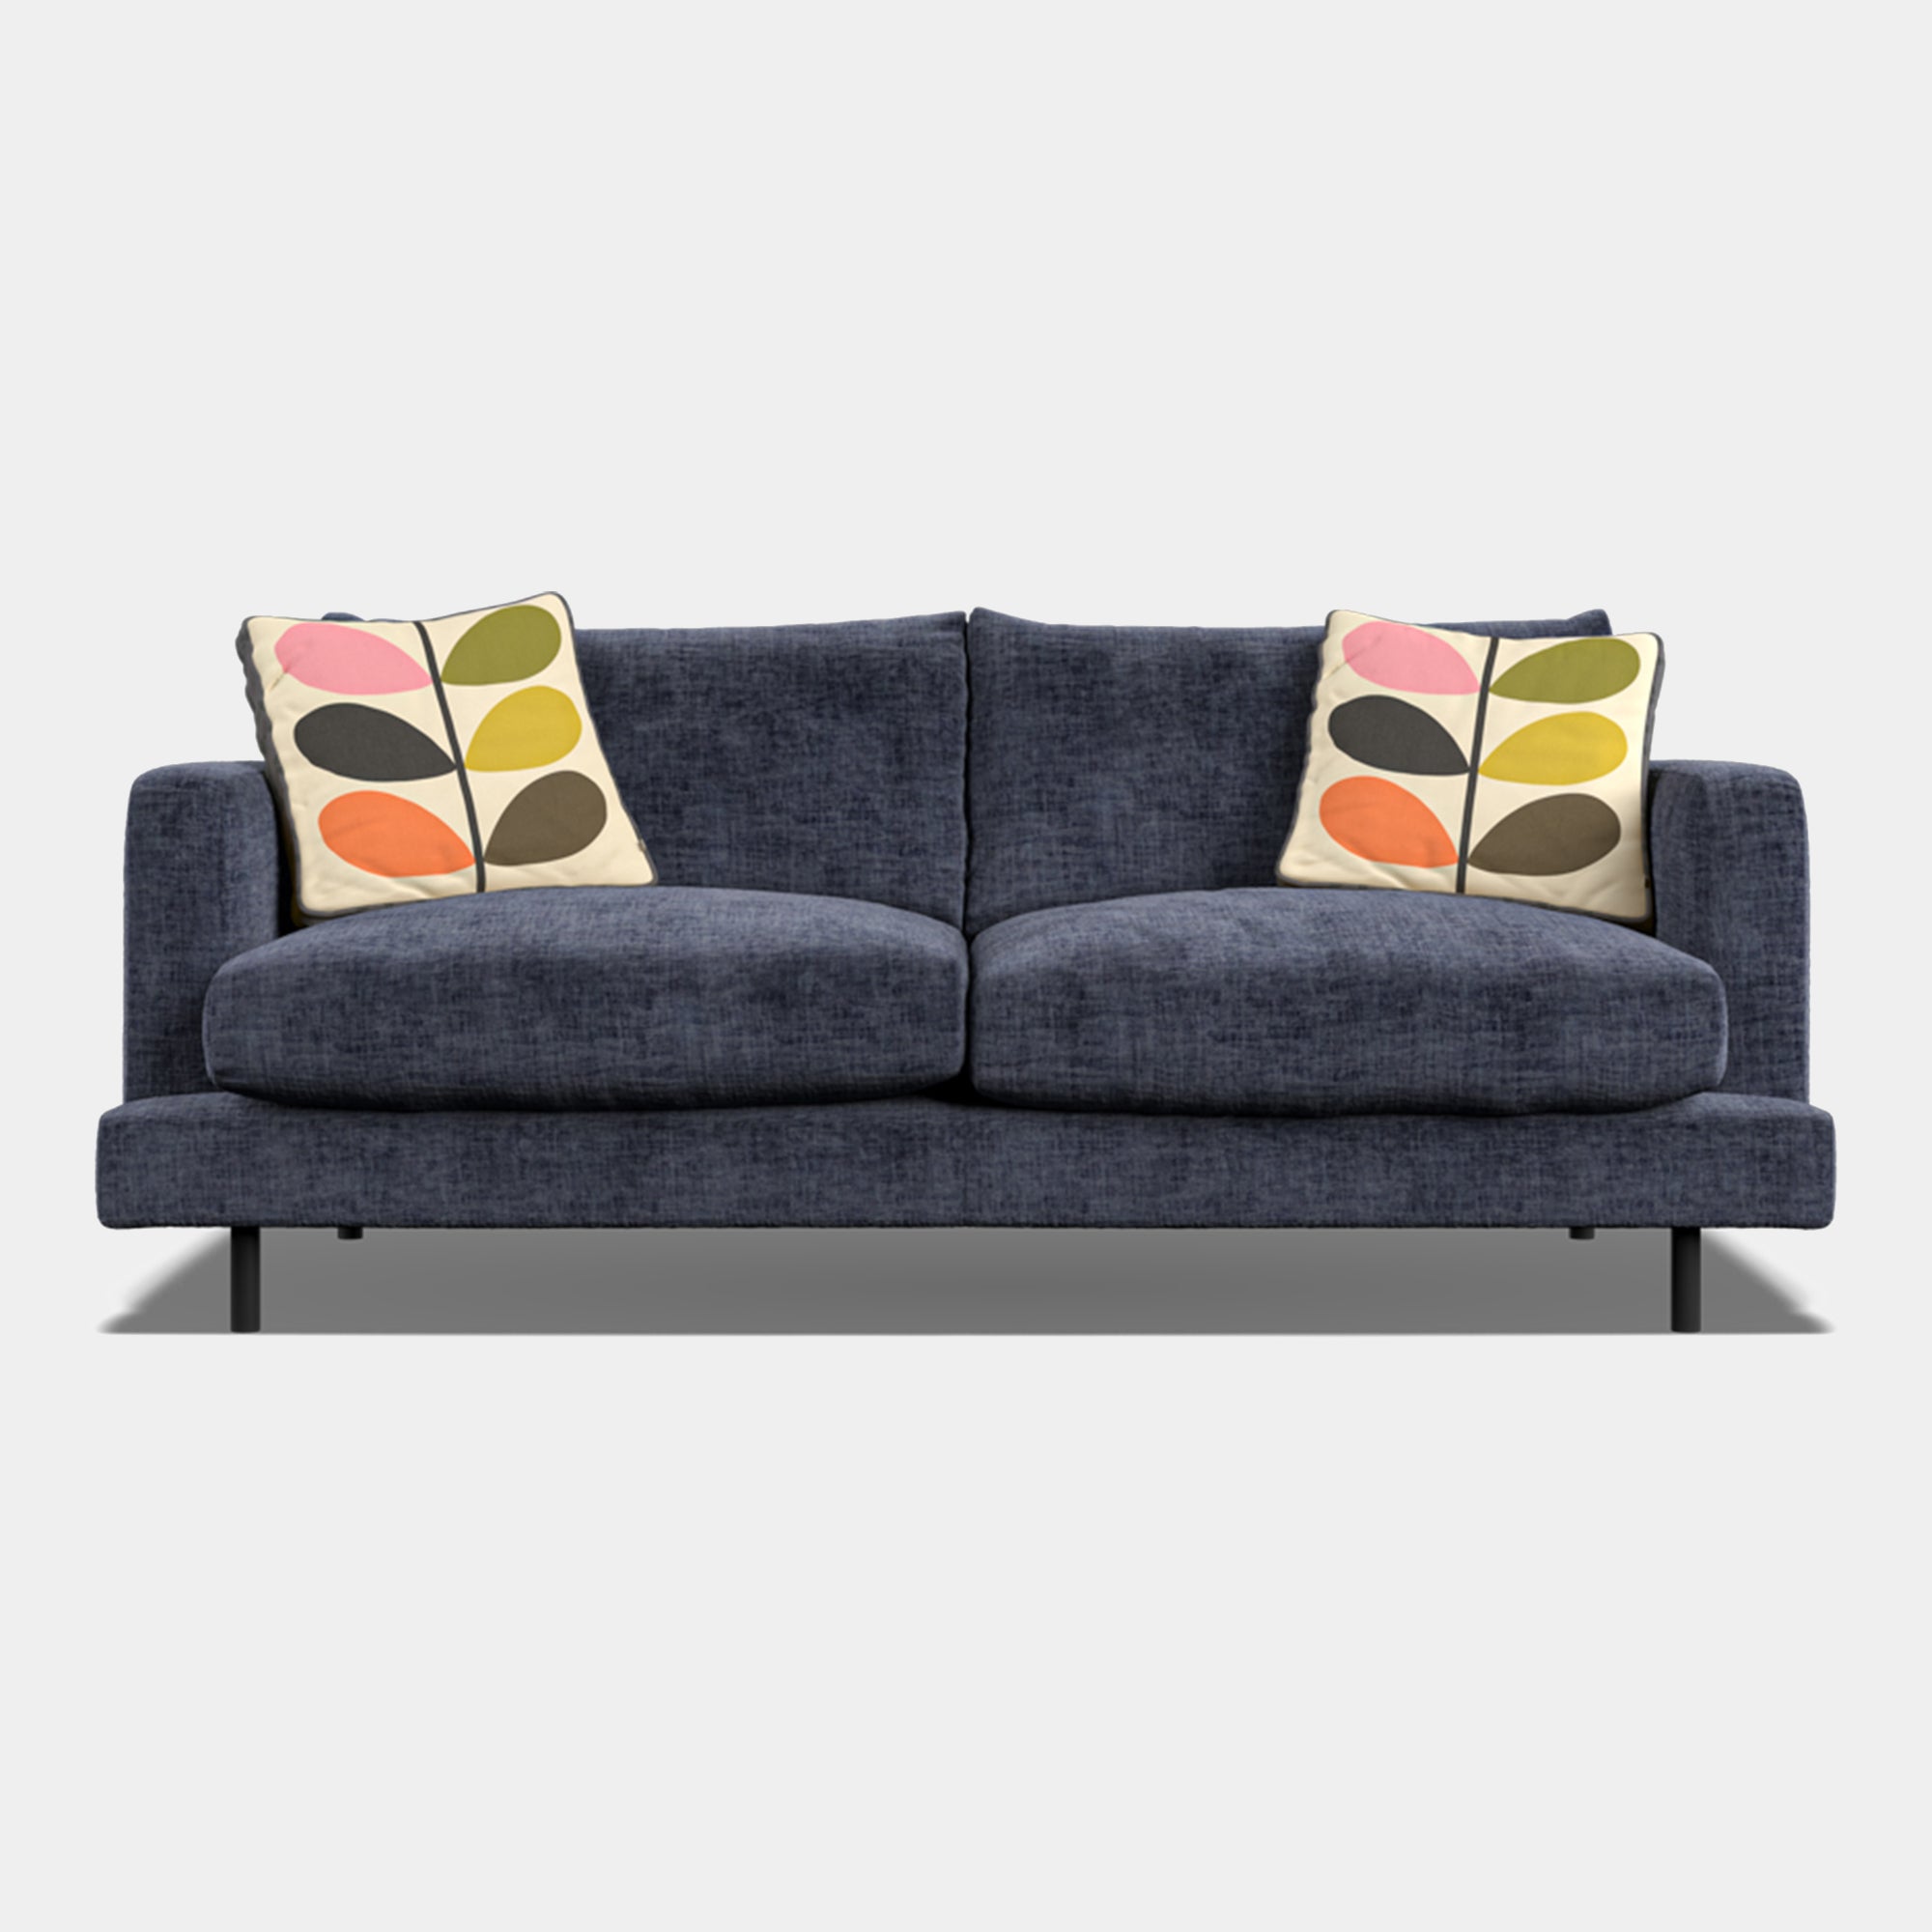 Orla Kiely Larch - Medium Sofa In Fabric Premium Plain